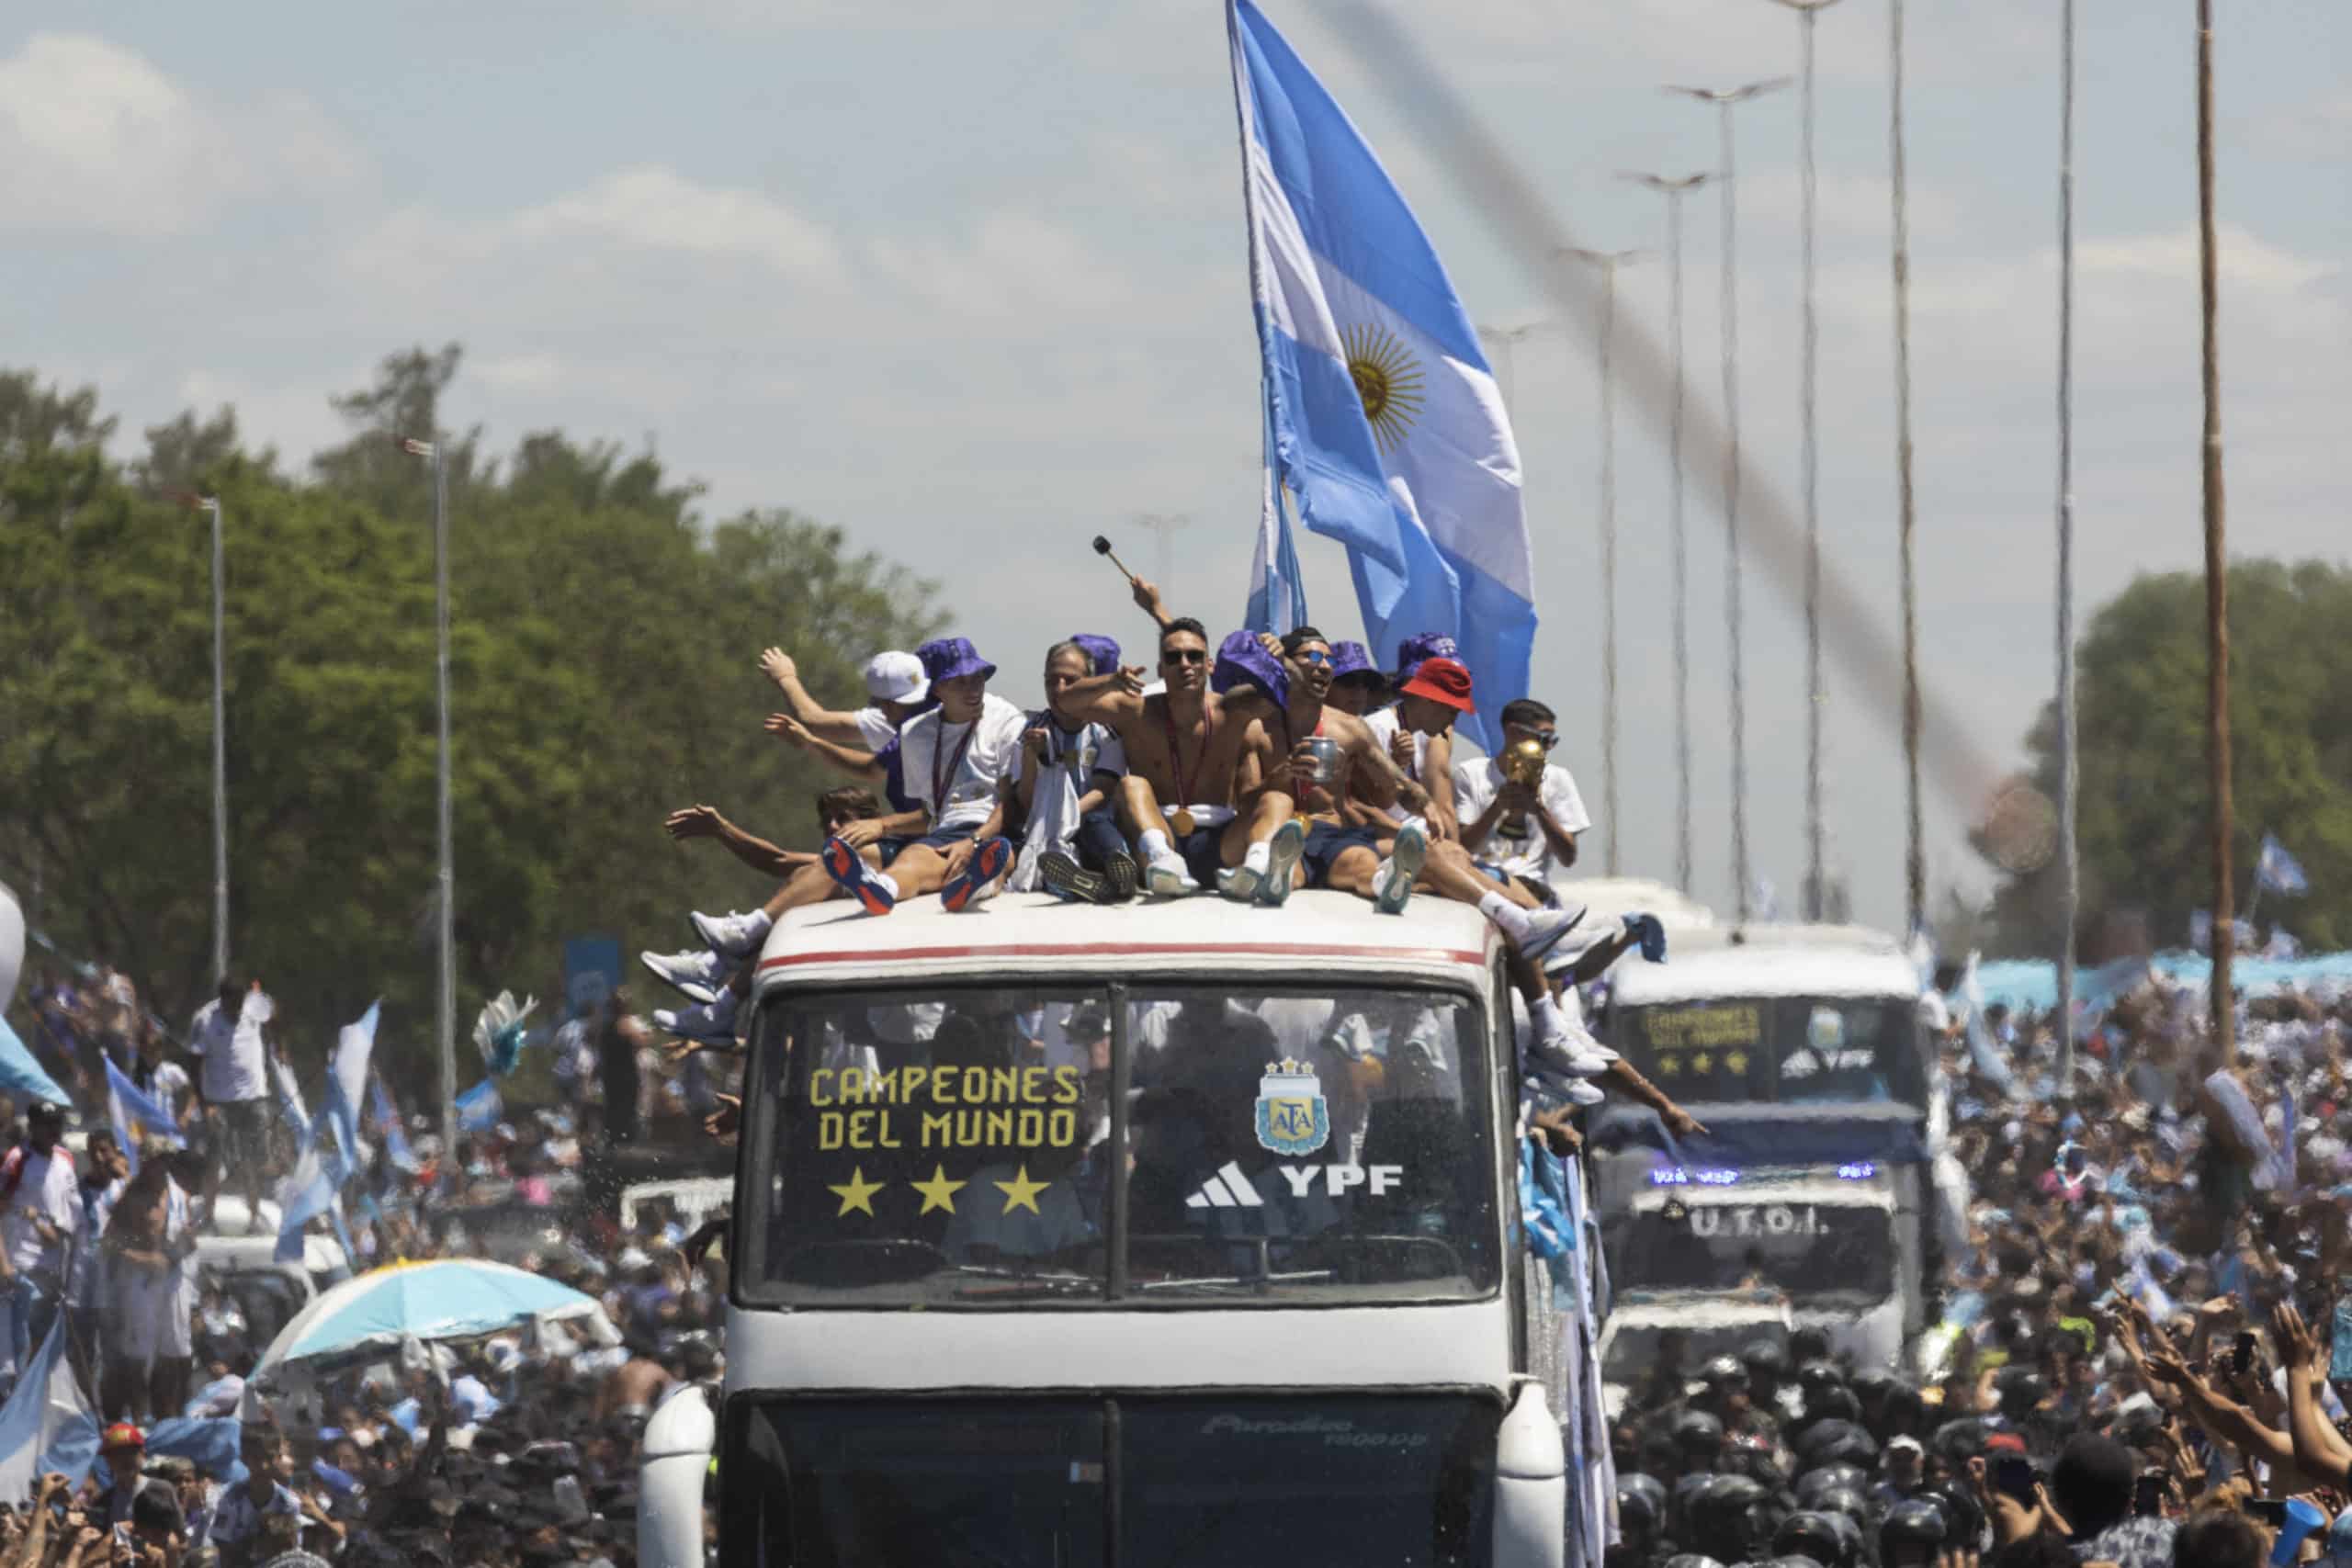 Festejo argentino terminó en helicóptero; calculan 5 millones de personas en las calles